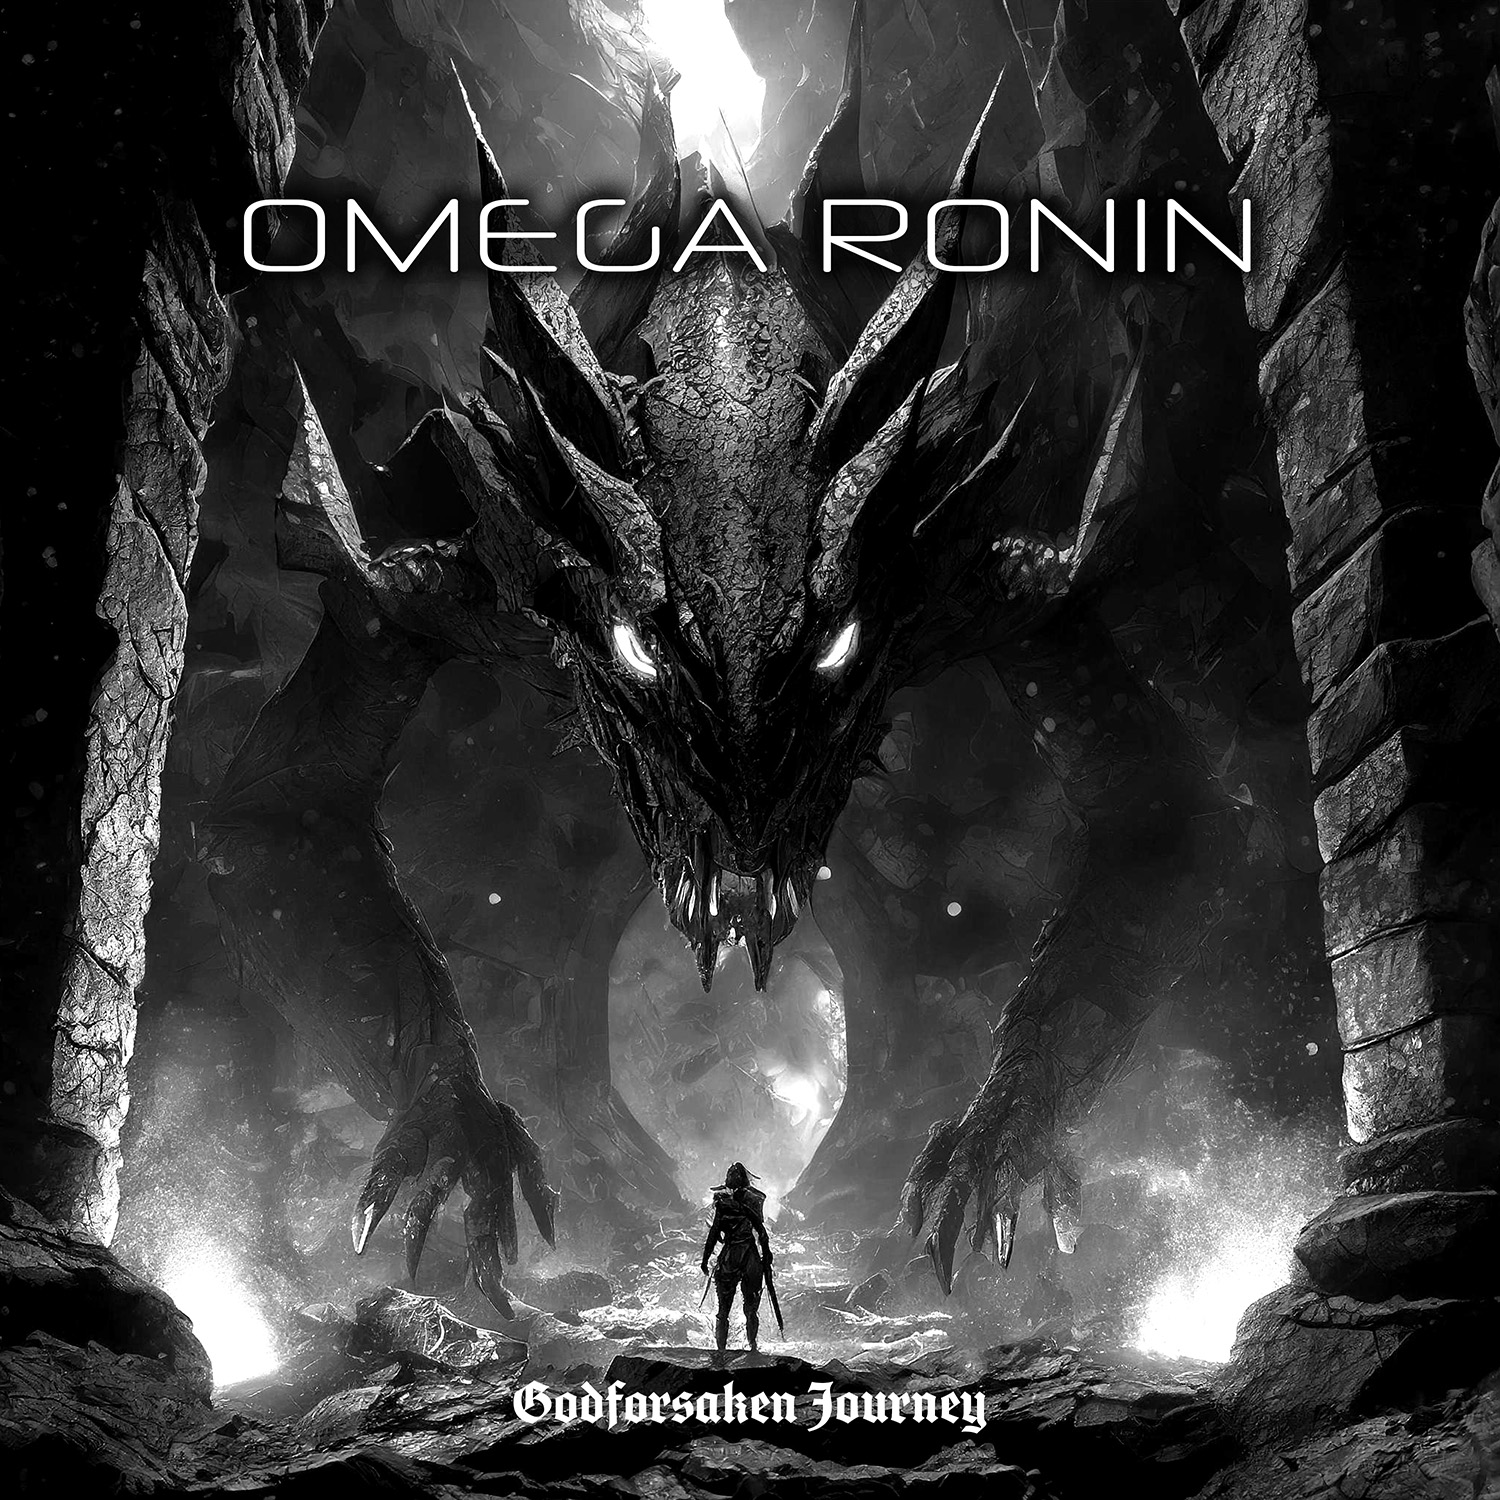 Omega Ronin: Godforsaken Journey